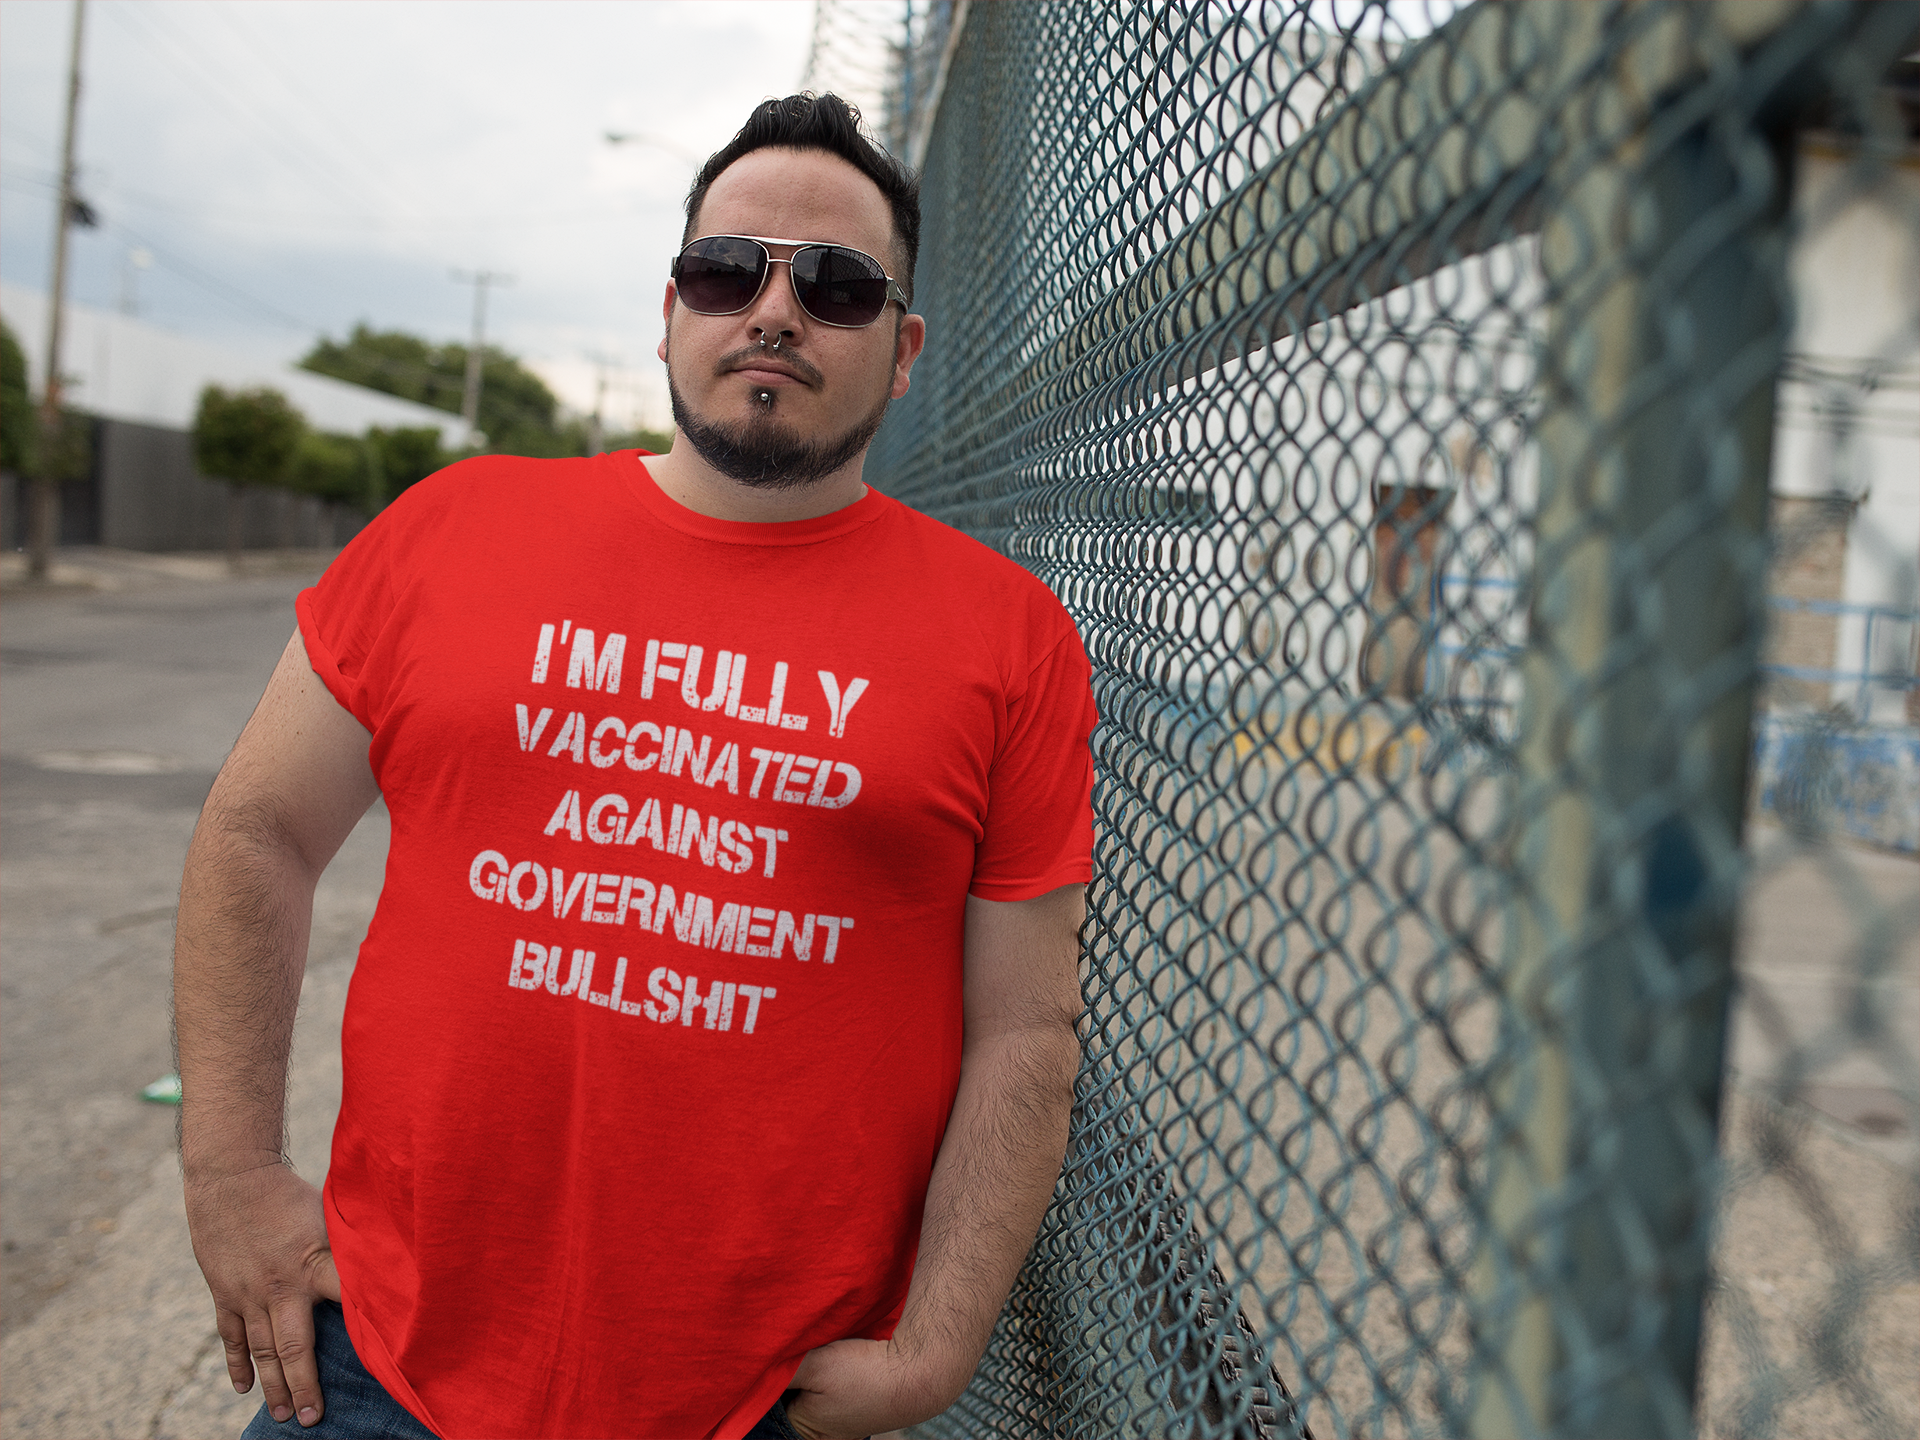 I'm Fully Vaccinated Against Government Bullshit, T-Shirt Men